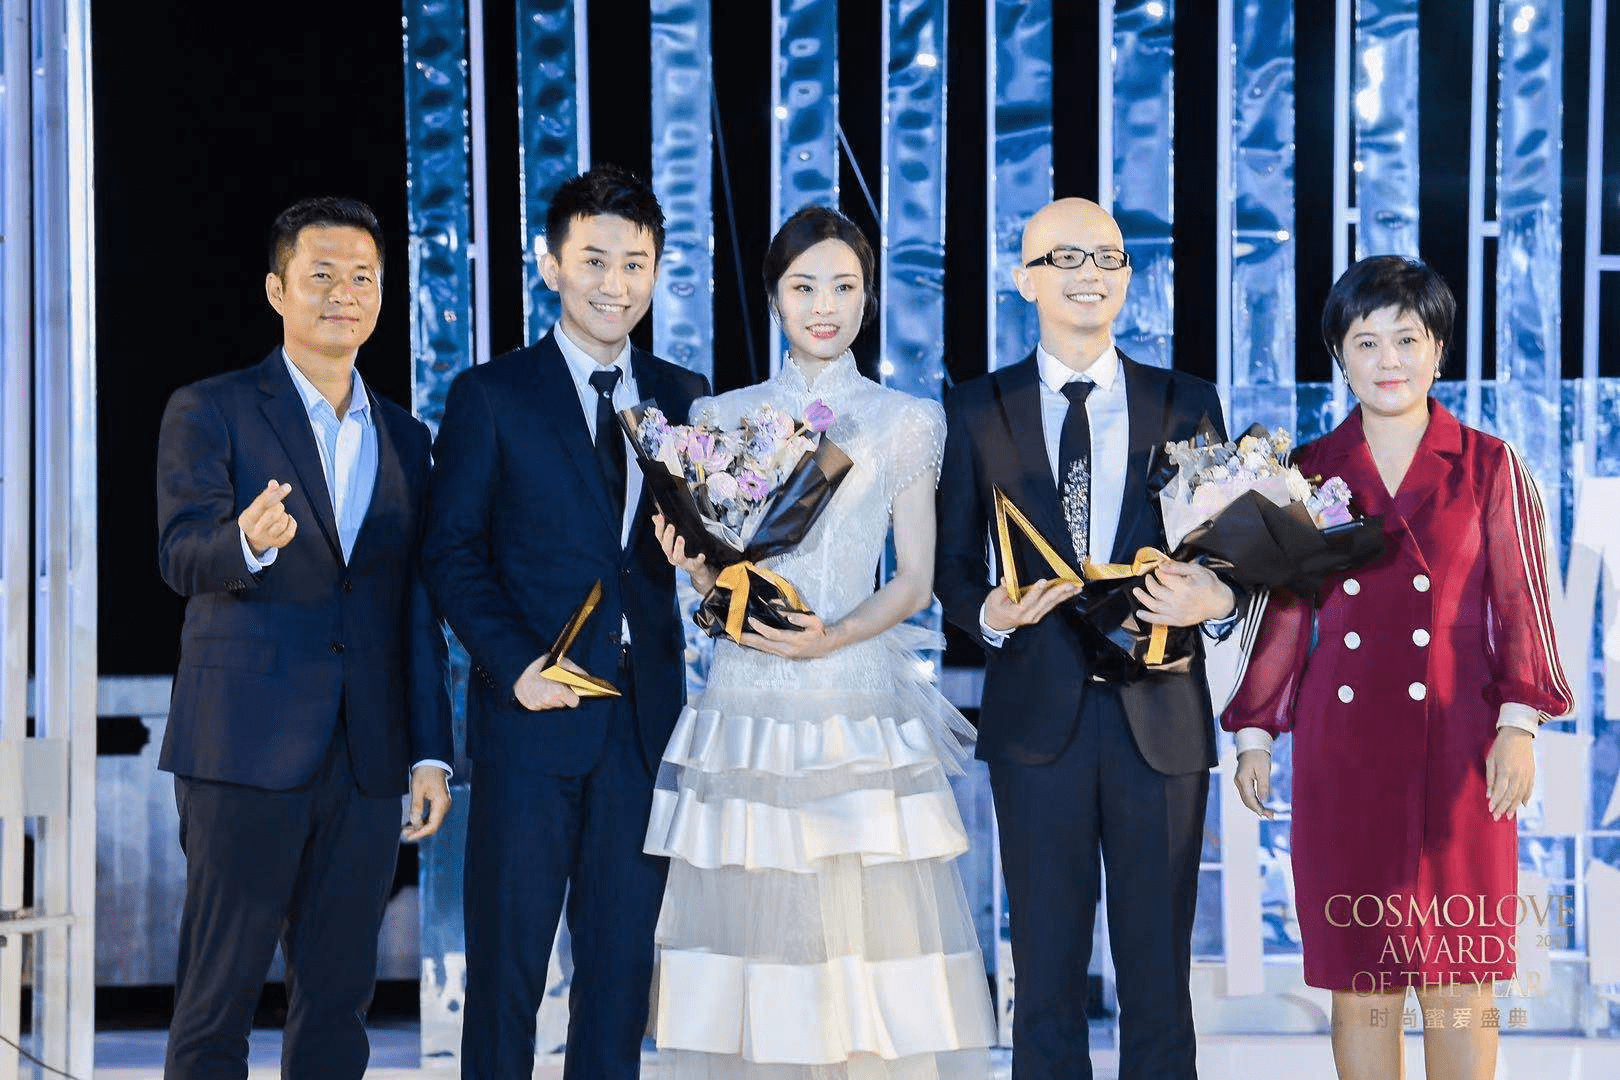 三亚市旅游推广局携手三亚旅文集团与《时尚新娘》联合打造2021时尚蜜爱盛典